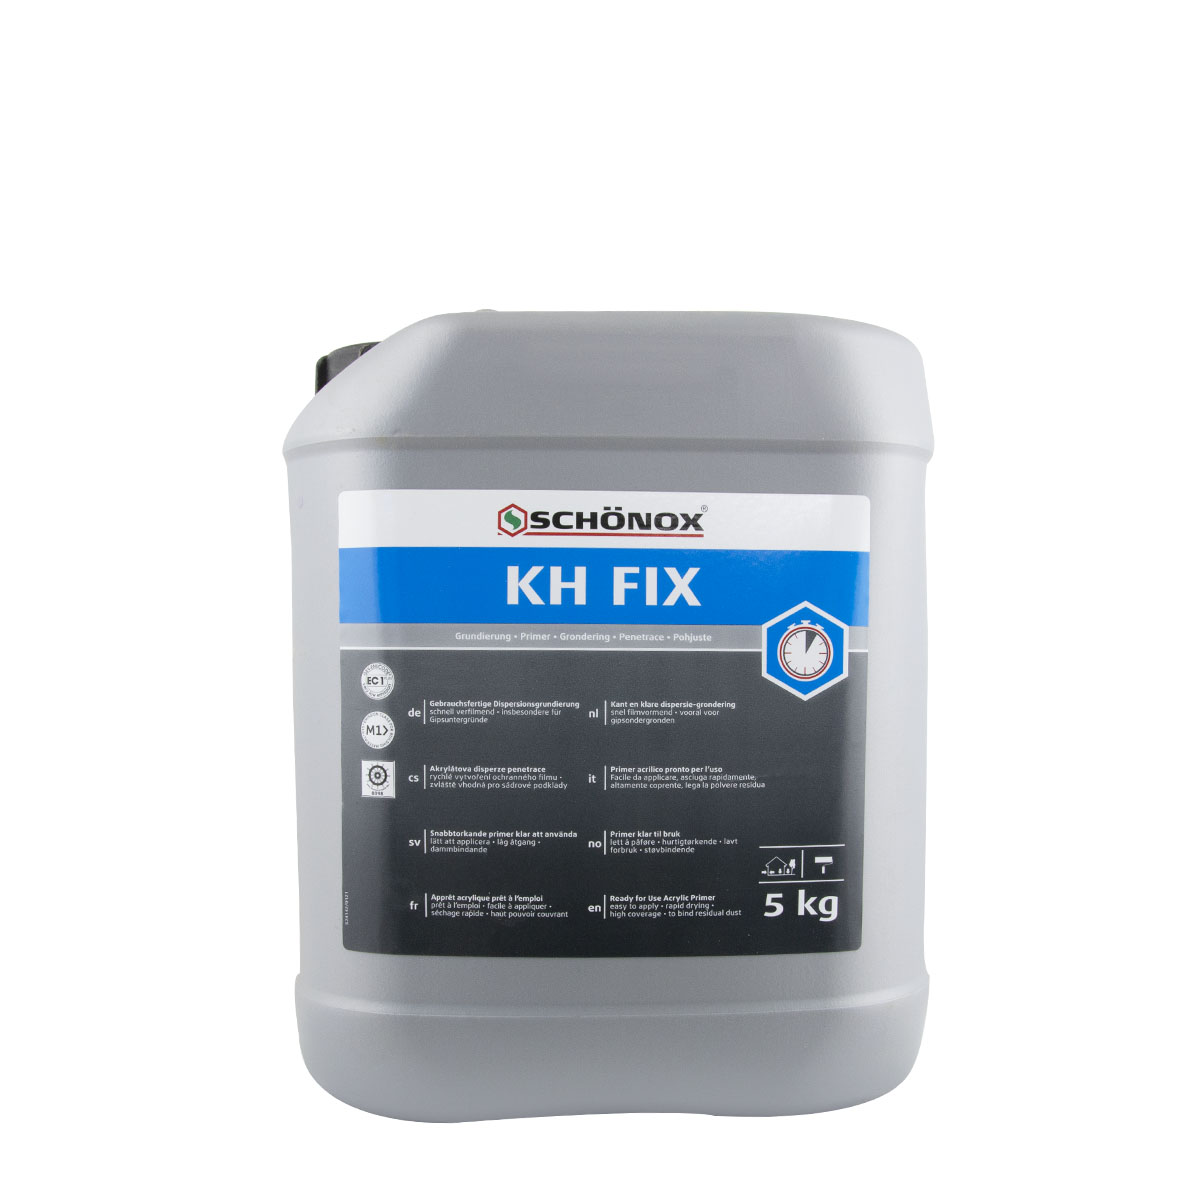 Schönox KH-Fix 5kg, lösemittelfreie Kunstharzdispersion